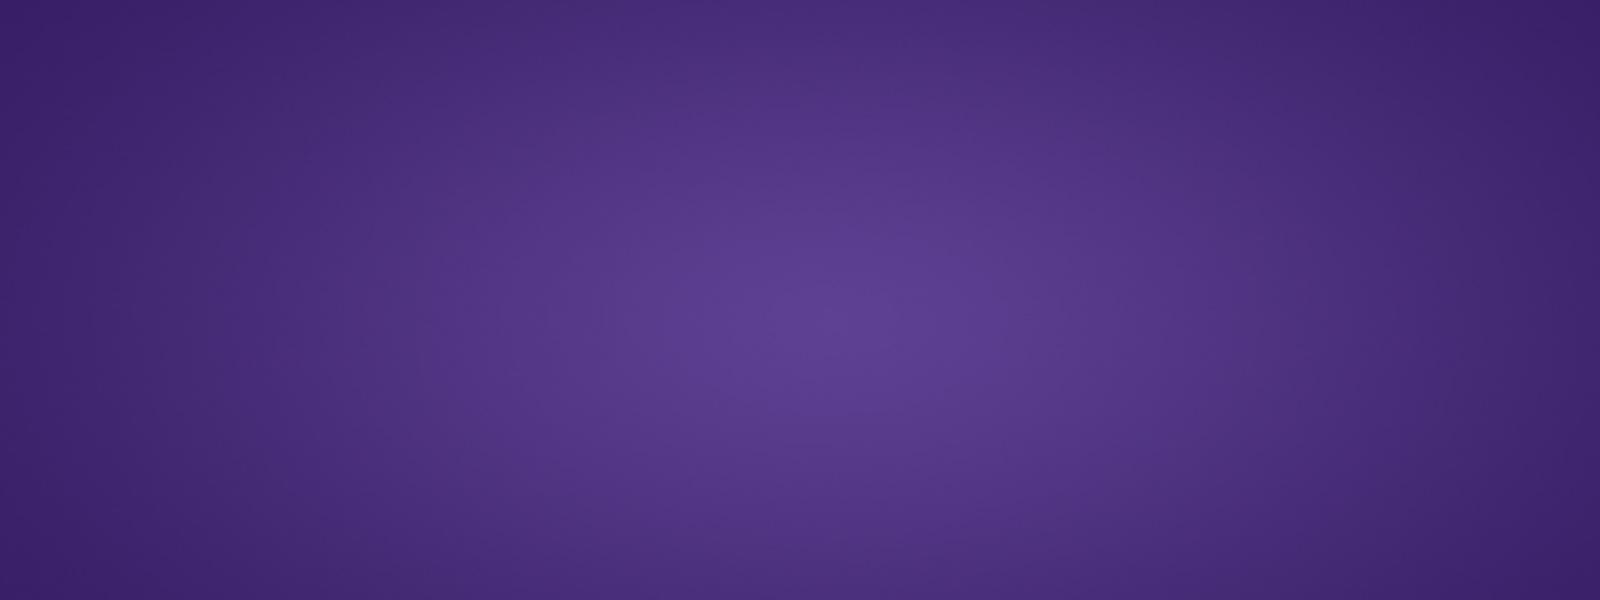 purple slide